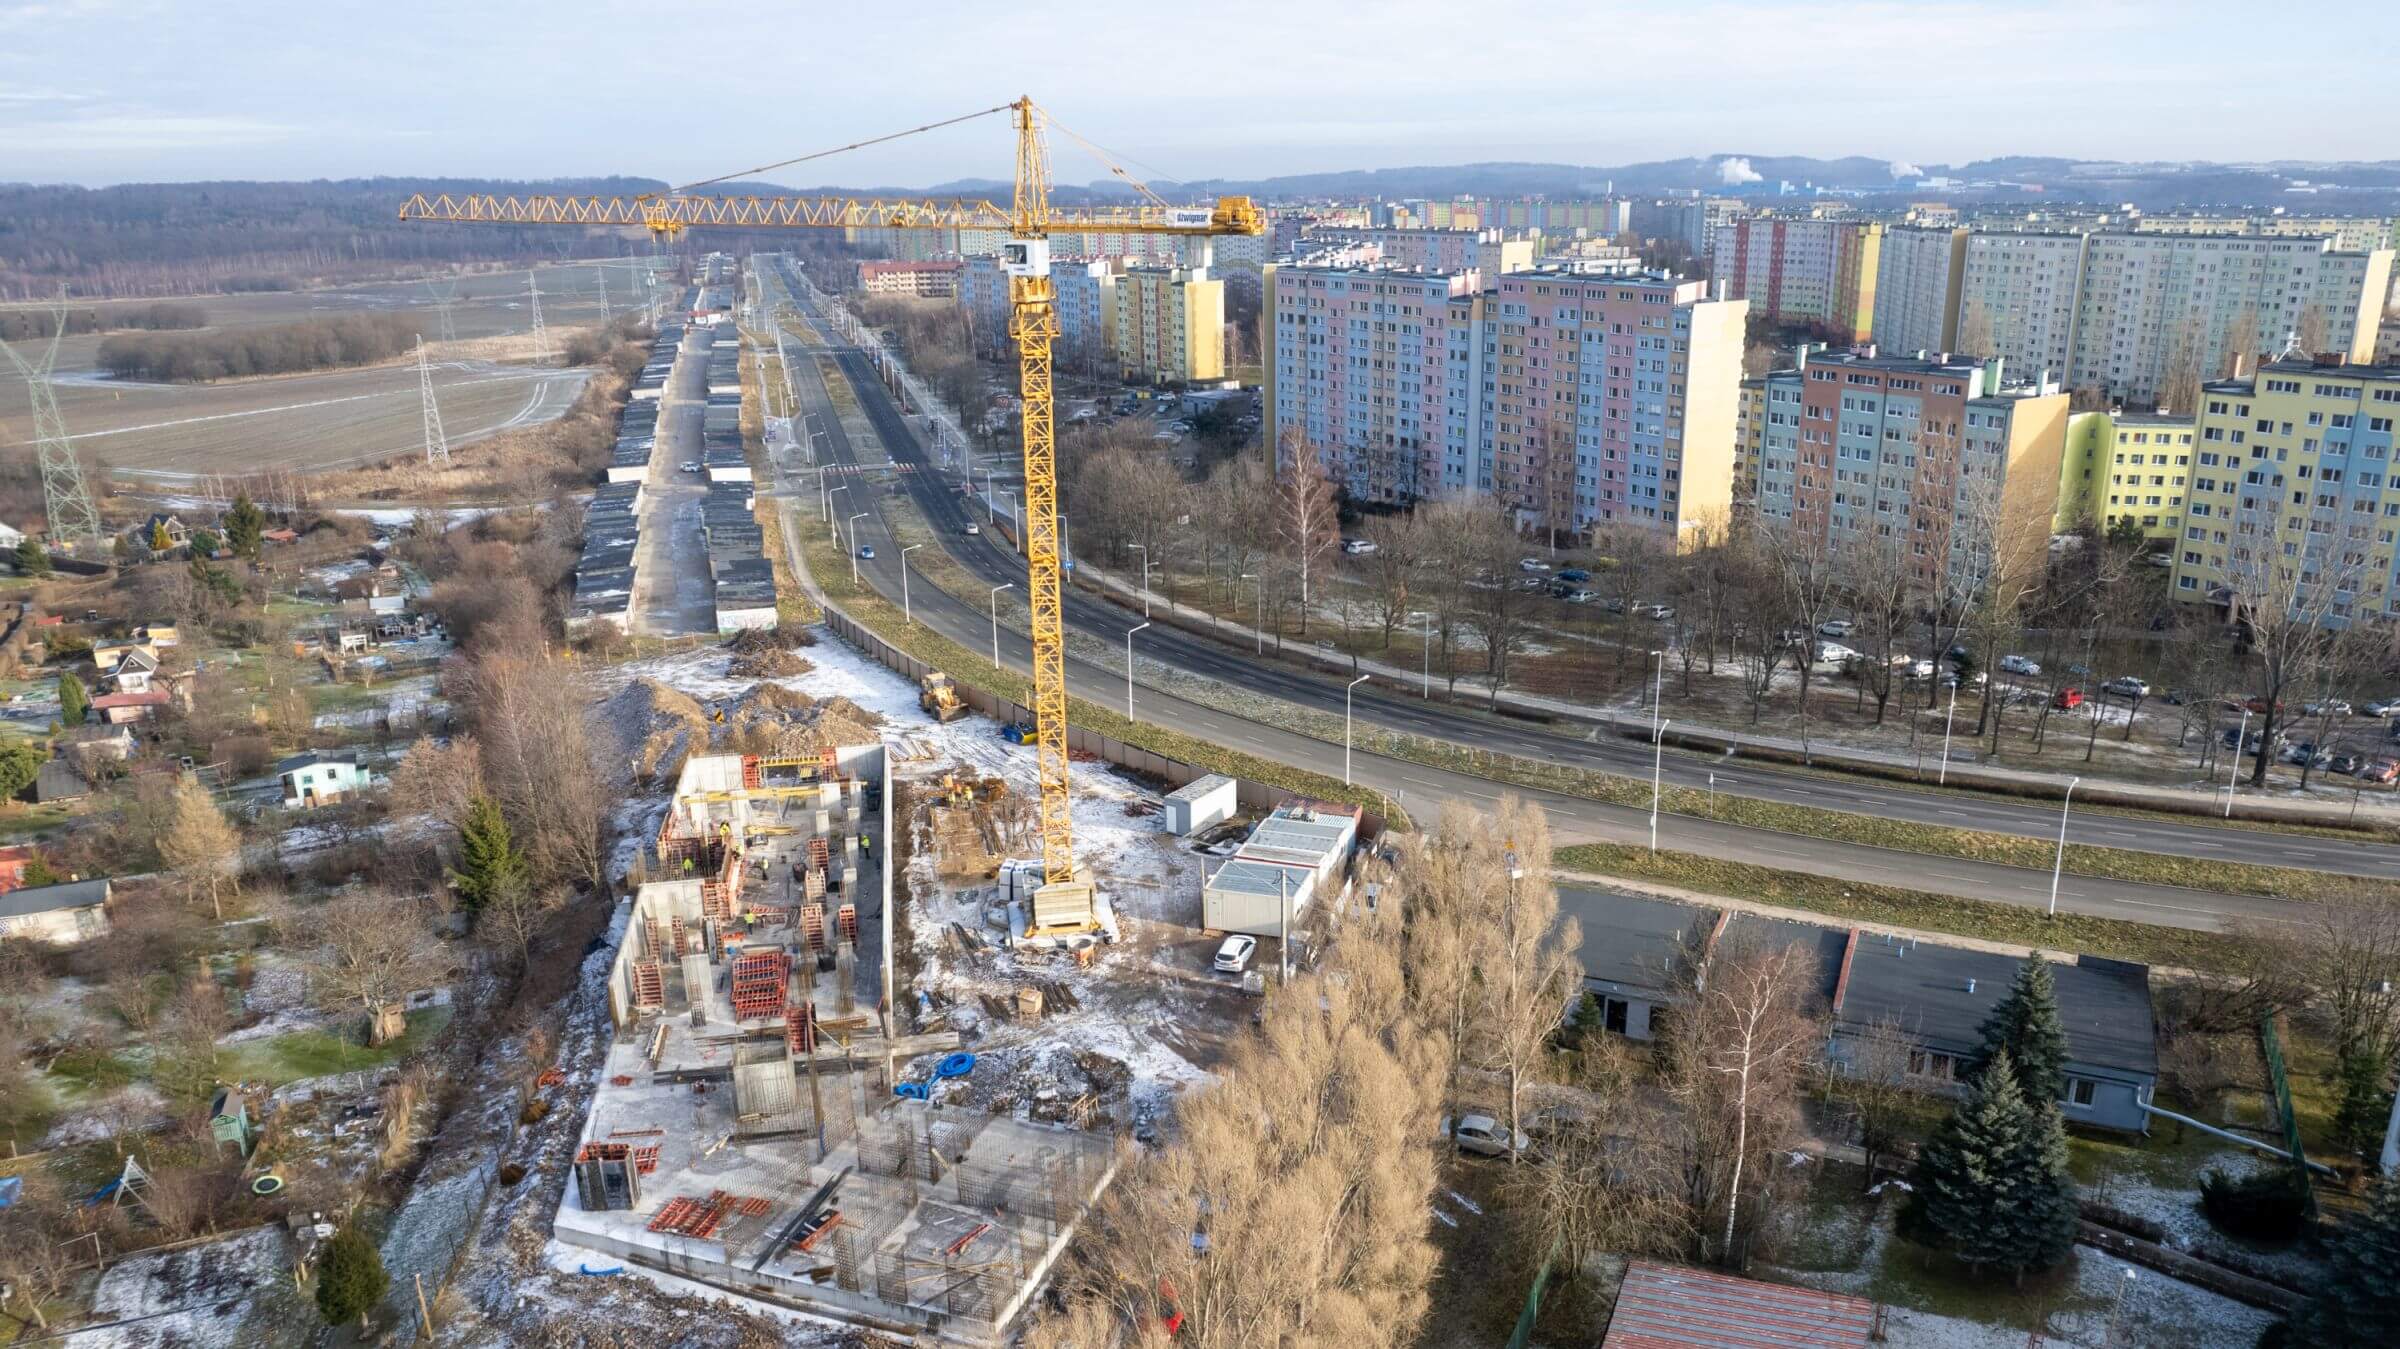 Nowe Podzamcze, Dziennik budowy - Nowe Podzamcze w Wałbrzychu - styczeń 2022